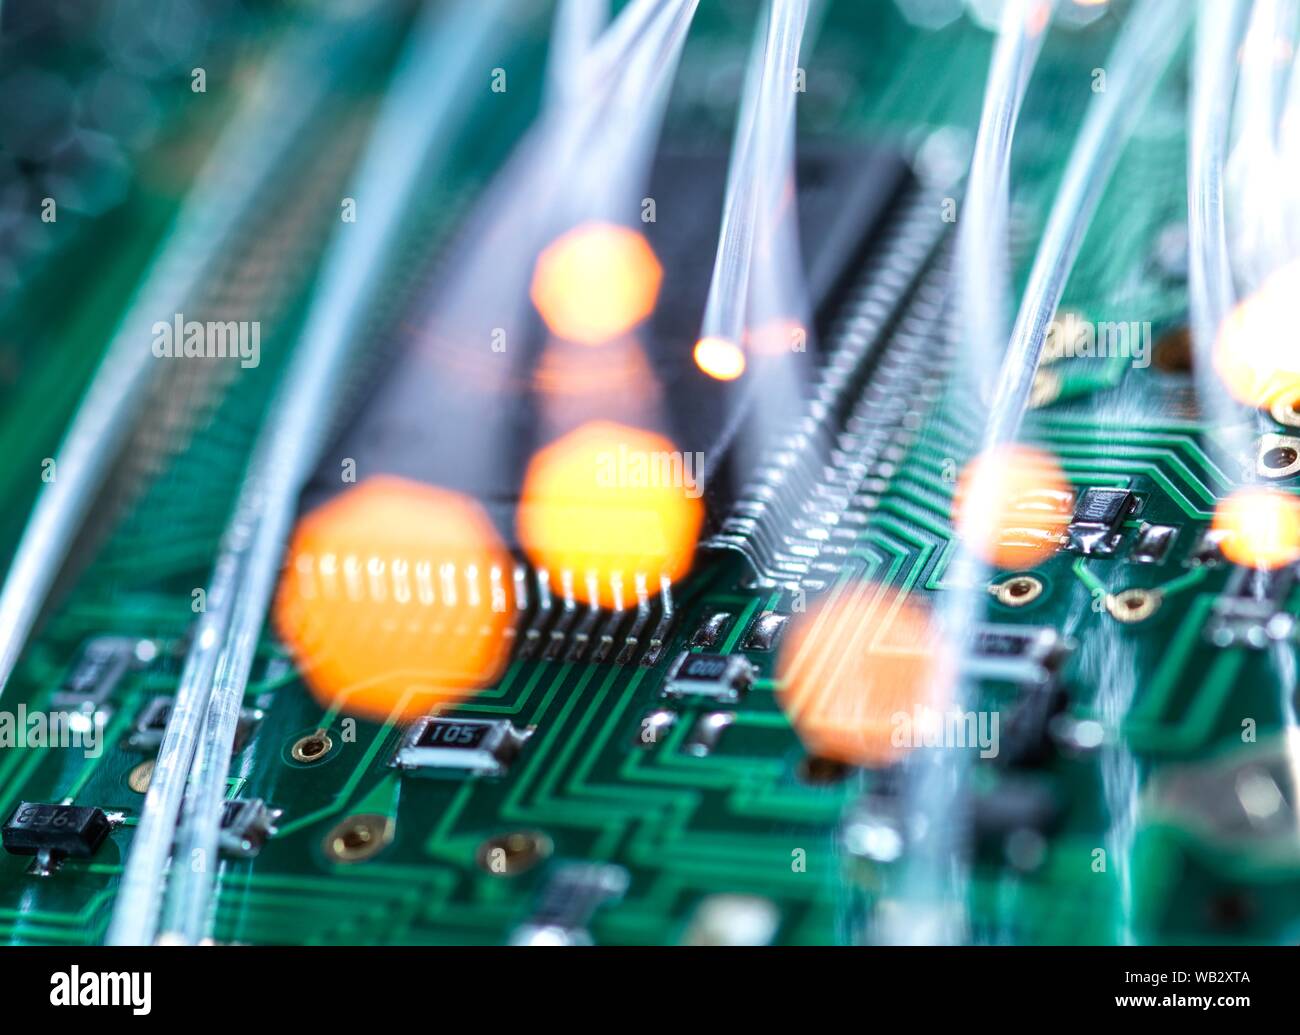 La comunicazione digitale, immagine concettuale. La fibra ottica che trasporta i dati su circuiti elettronici su un computer portatile. Foto Stock